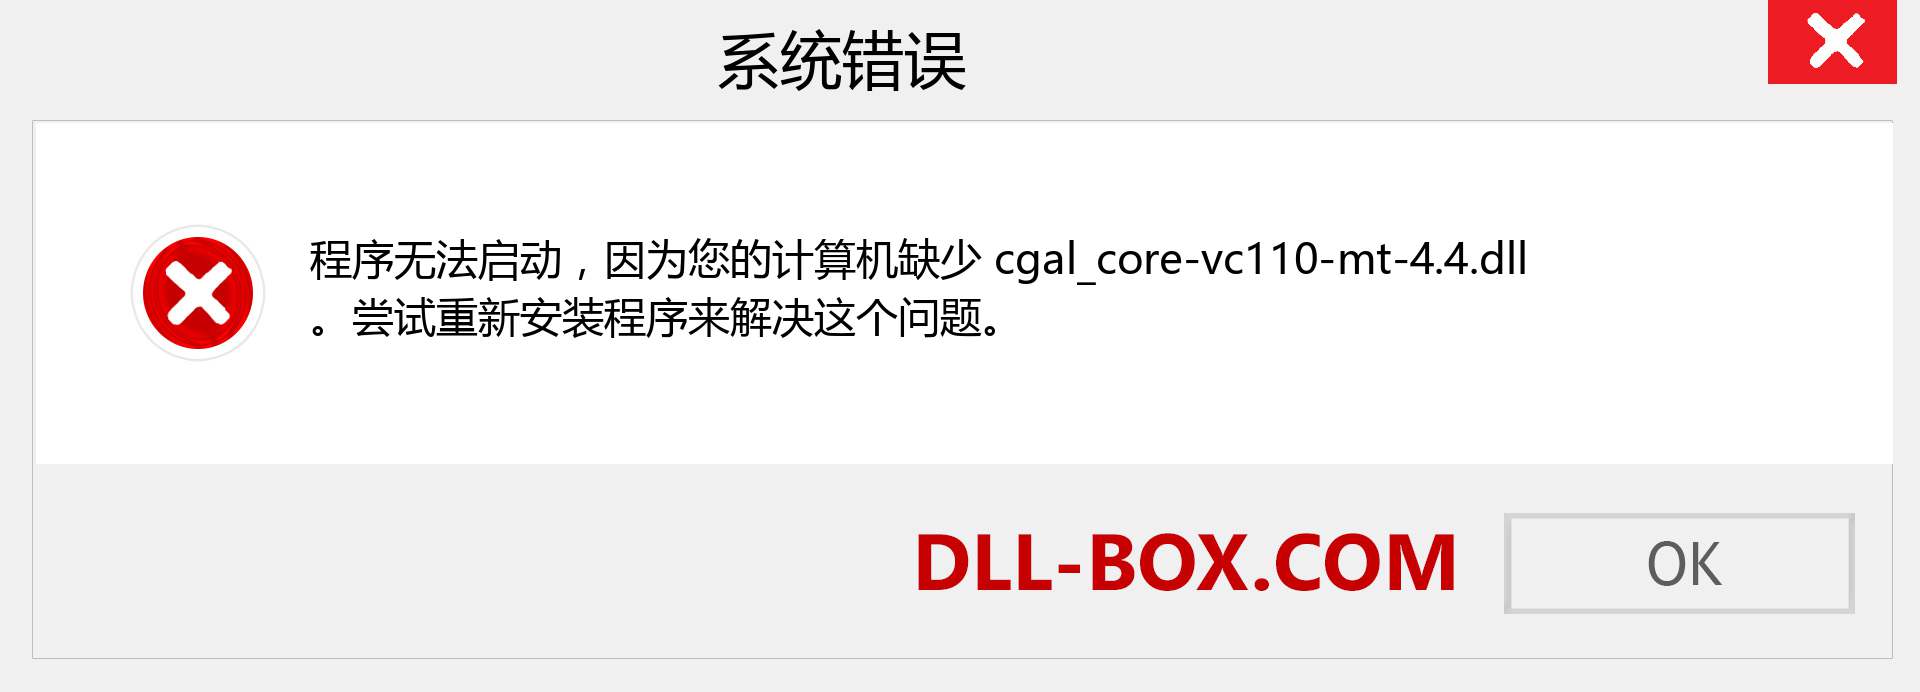 cgal_core-vc110-mt-4.4.dll 文件丢失？。 适用于 Windows 7、8、10 的下载 - 修复 Windows、照片、图像上的 cgal_core-vc110-mt-4.4 dll 丢失错误